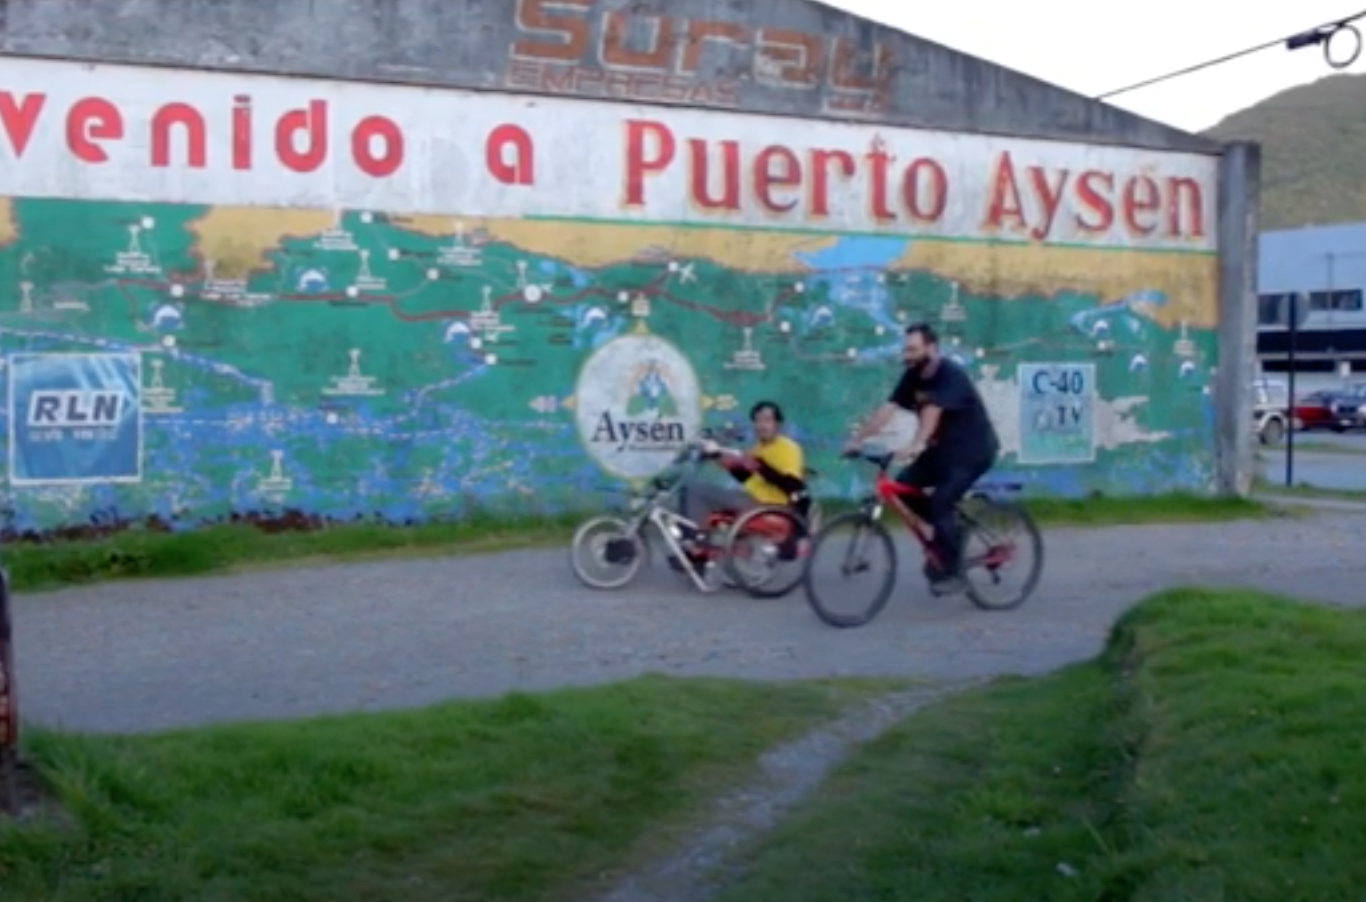 Dos personas, una en bicicleta y otra en silla de ruedas pasando frente a un mural que dice "bienvenido a Puerto Aysén"